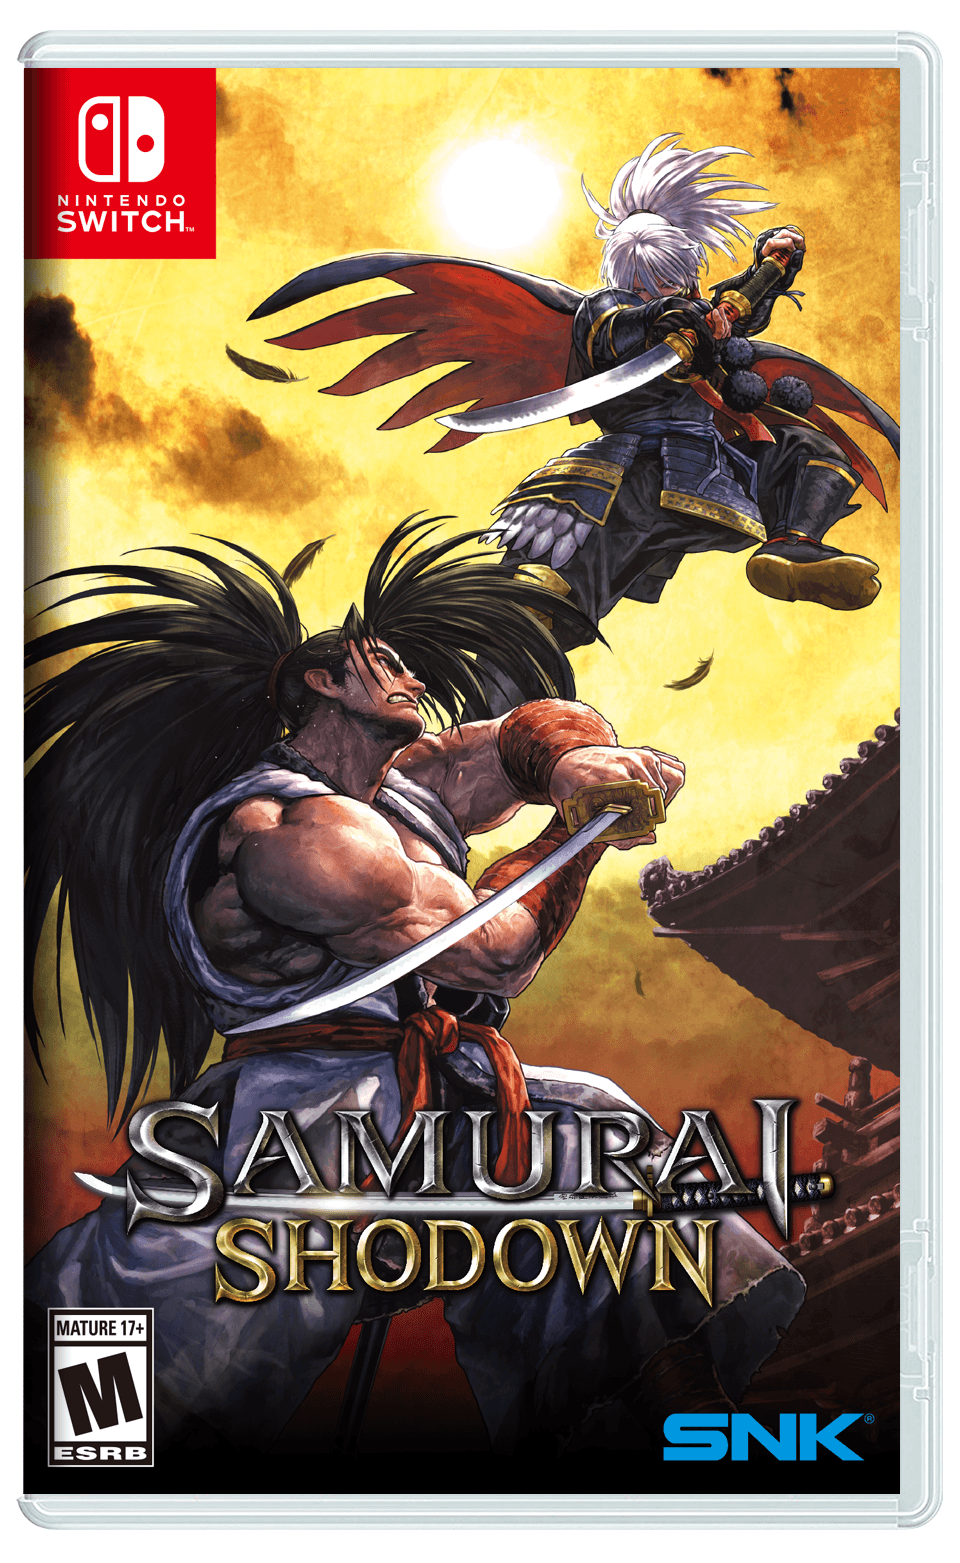 SAMURAI SHODOWN Announces Q1 2020 Release in North America for Nintendo Switch